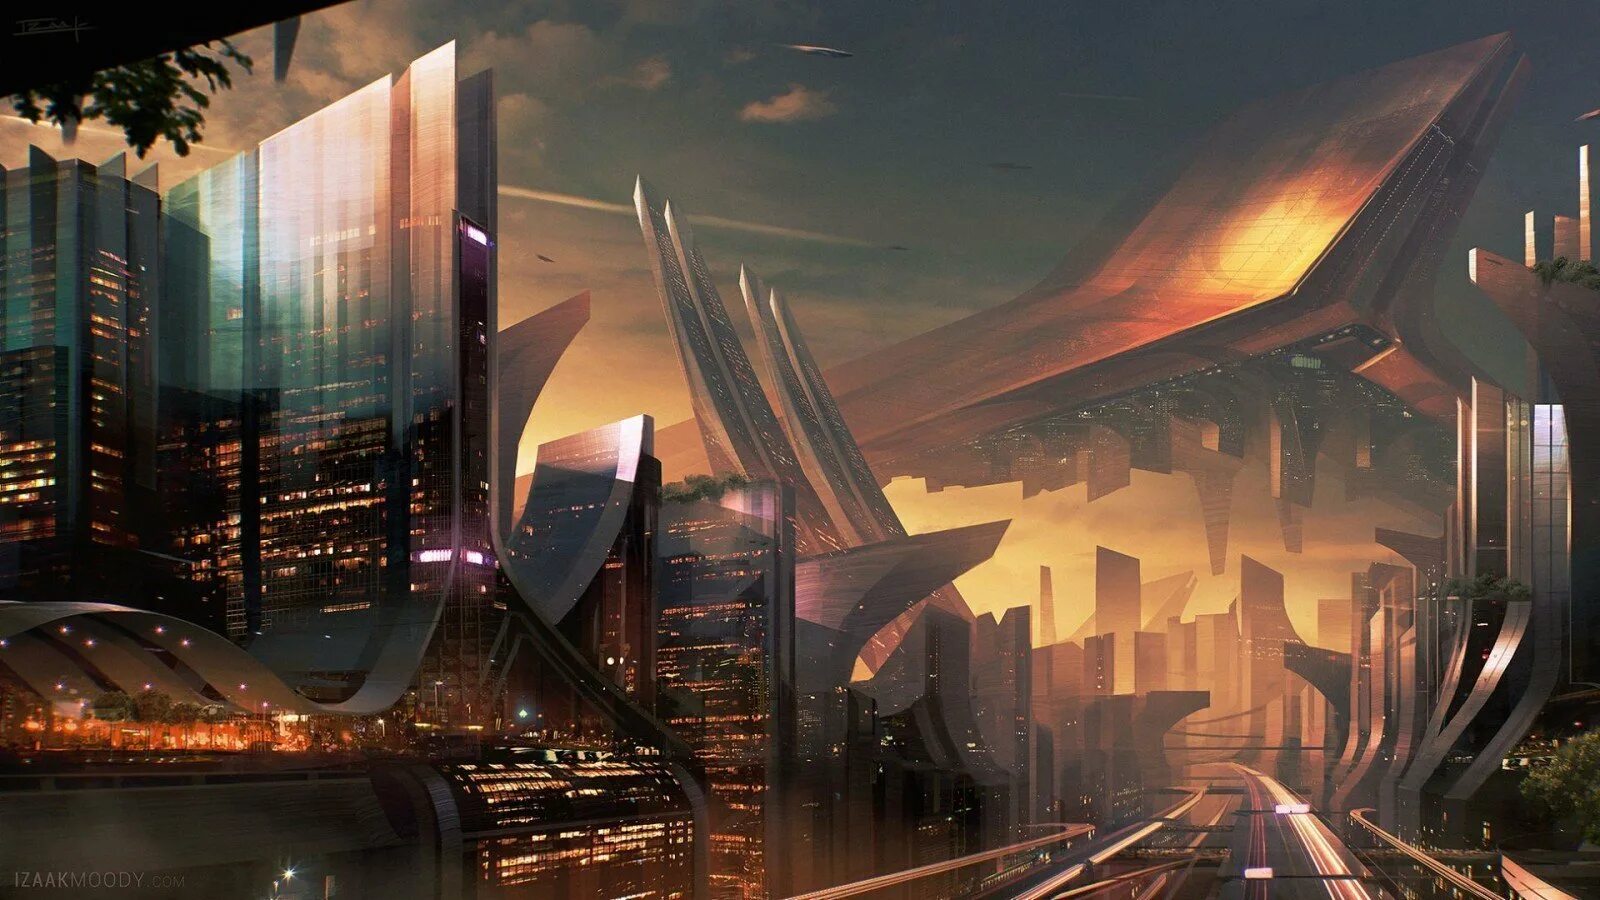 Используйте будущее. Экогород будущего концепт Левиафан. Нео футуризм в архитектуре город будущего. Арт Sci Fi City'. Sci Fi город футуризм.